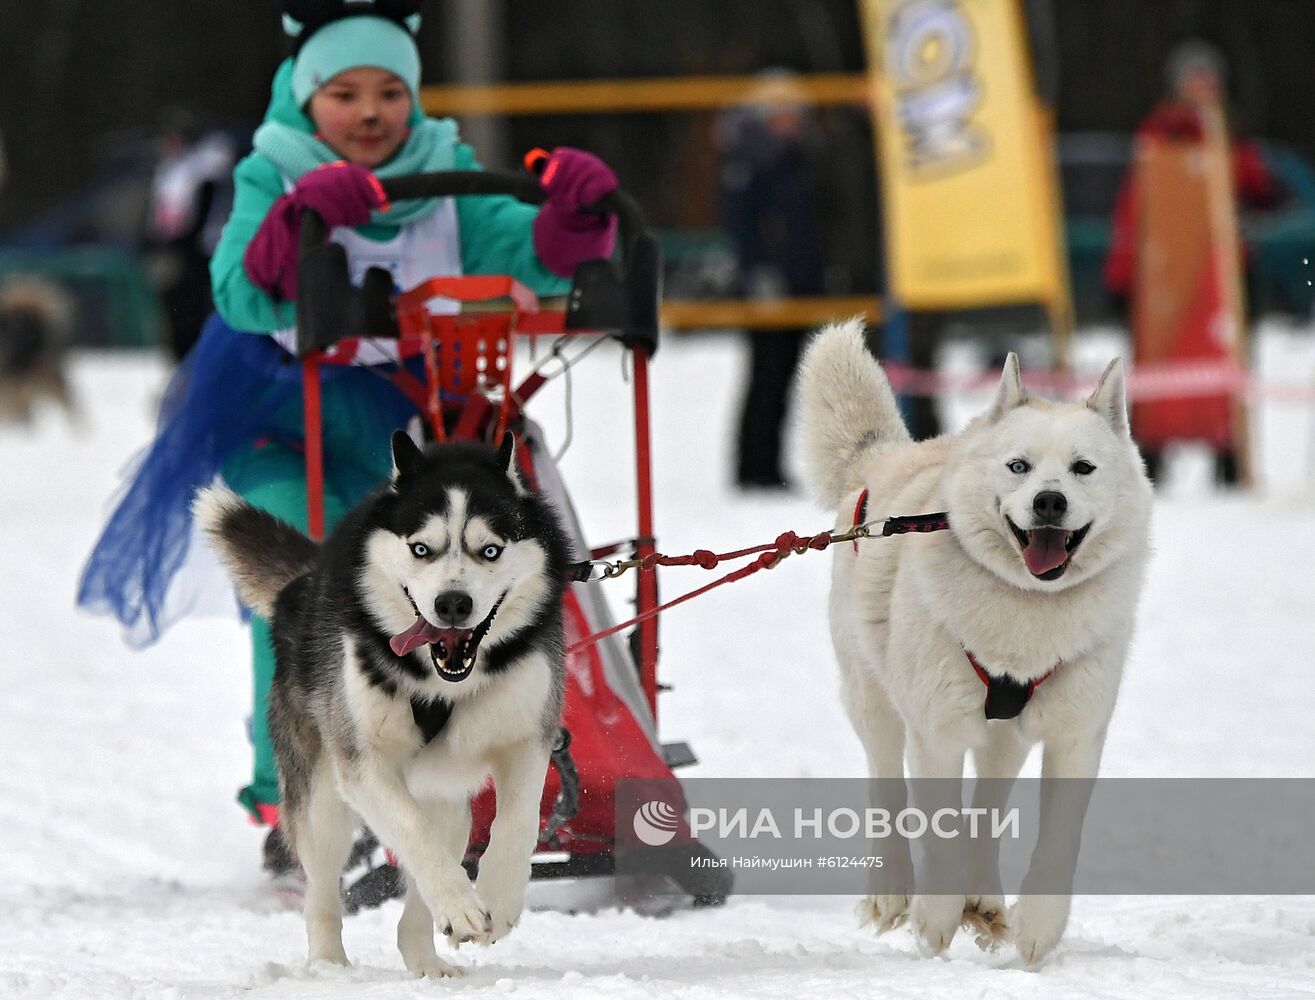 Соревнования по ездовому спорту "Гонка Снеговиков 2020" в Красноярском крае